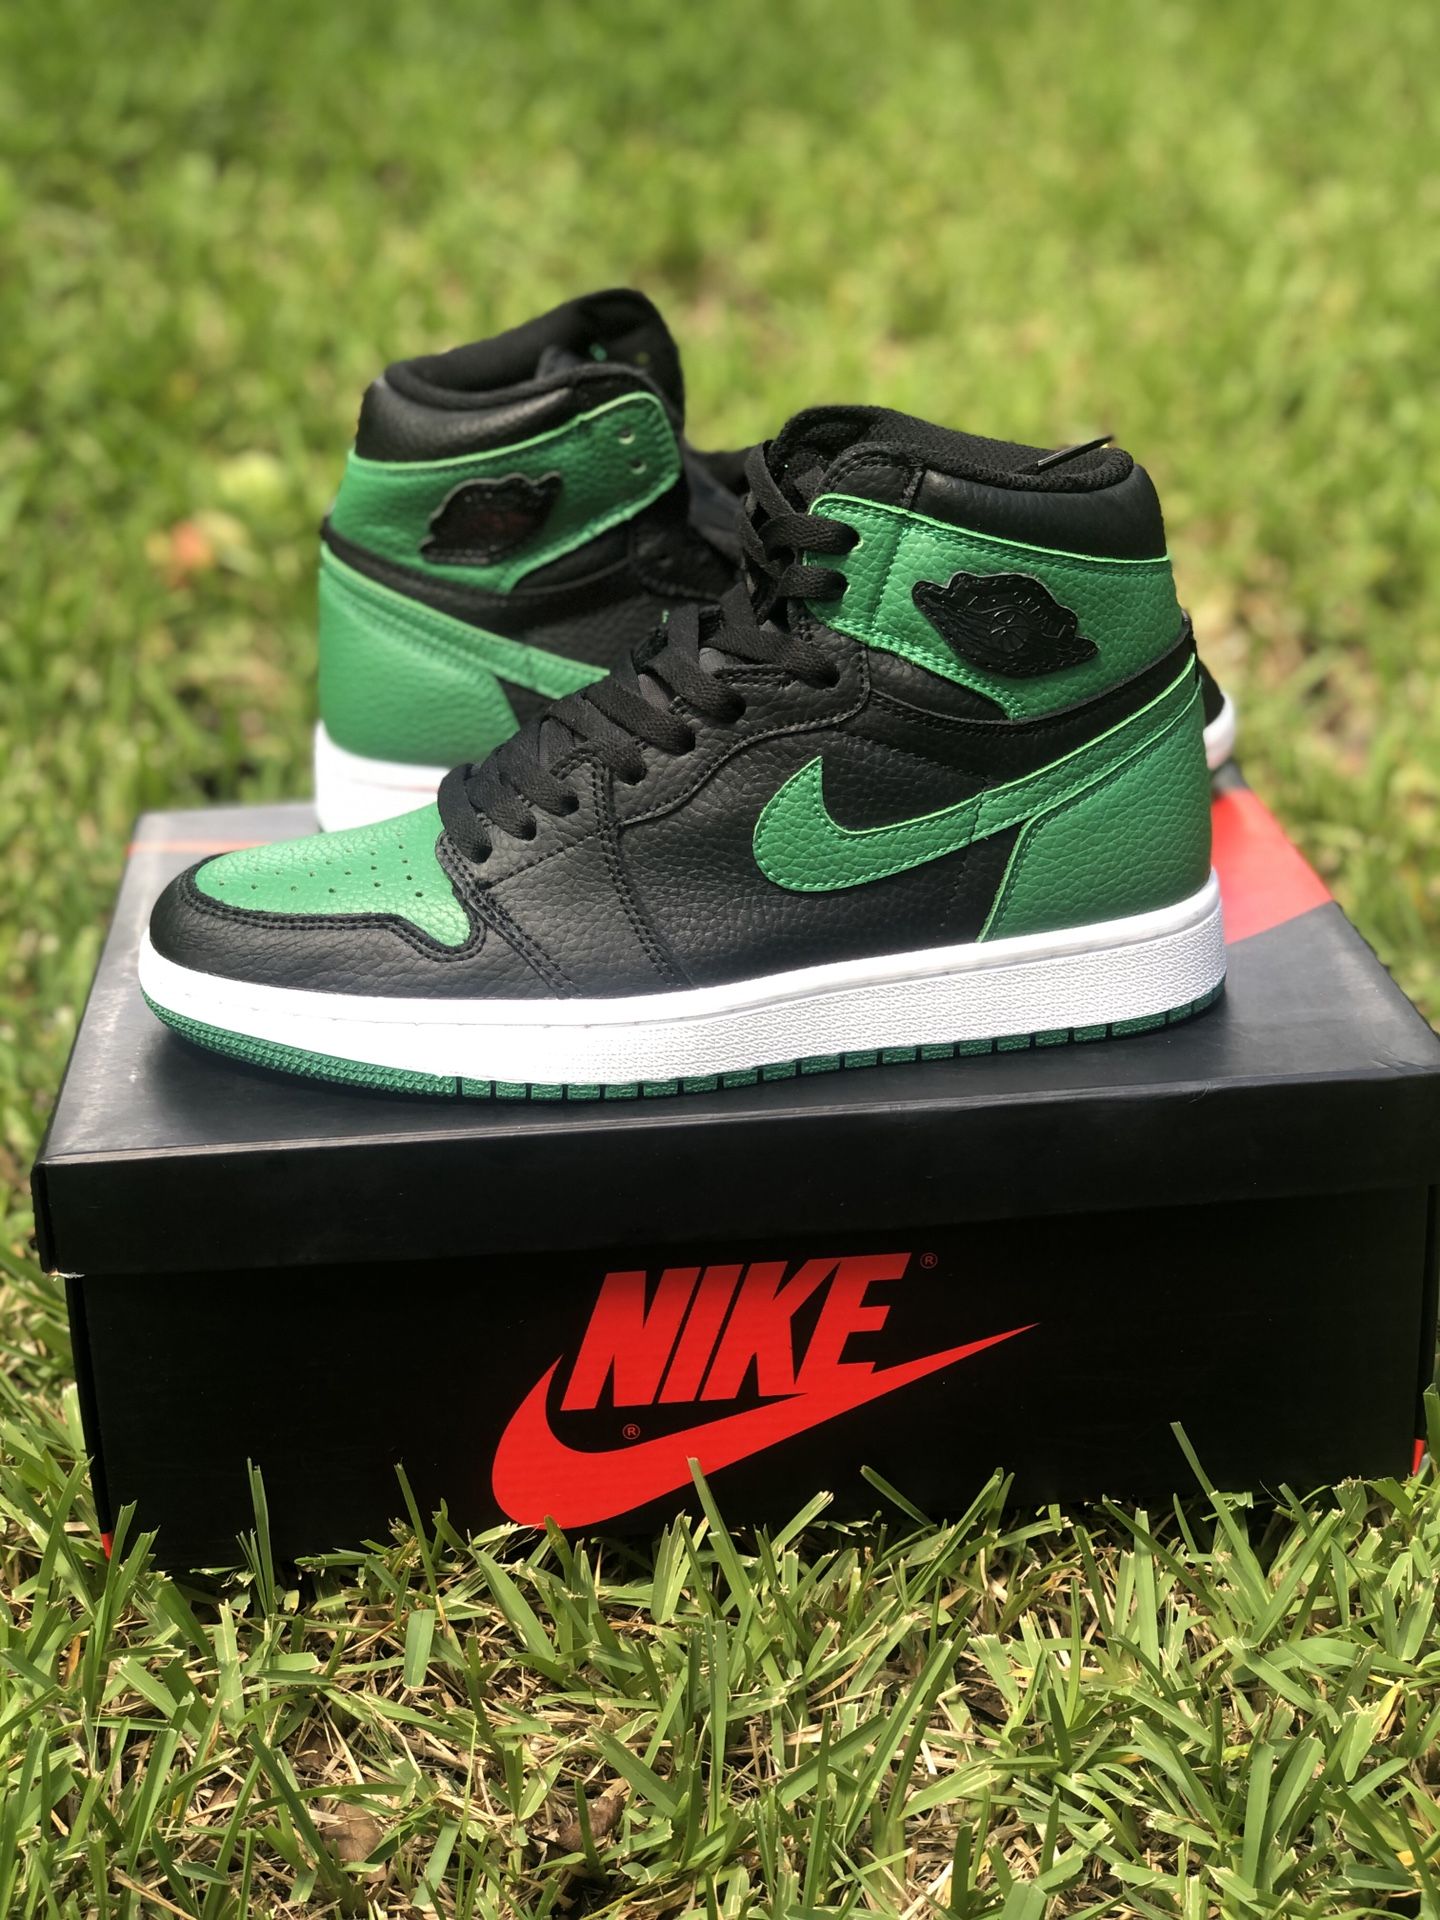 Air Jordan 1 “Pine green “